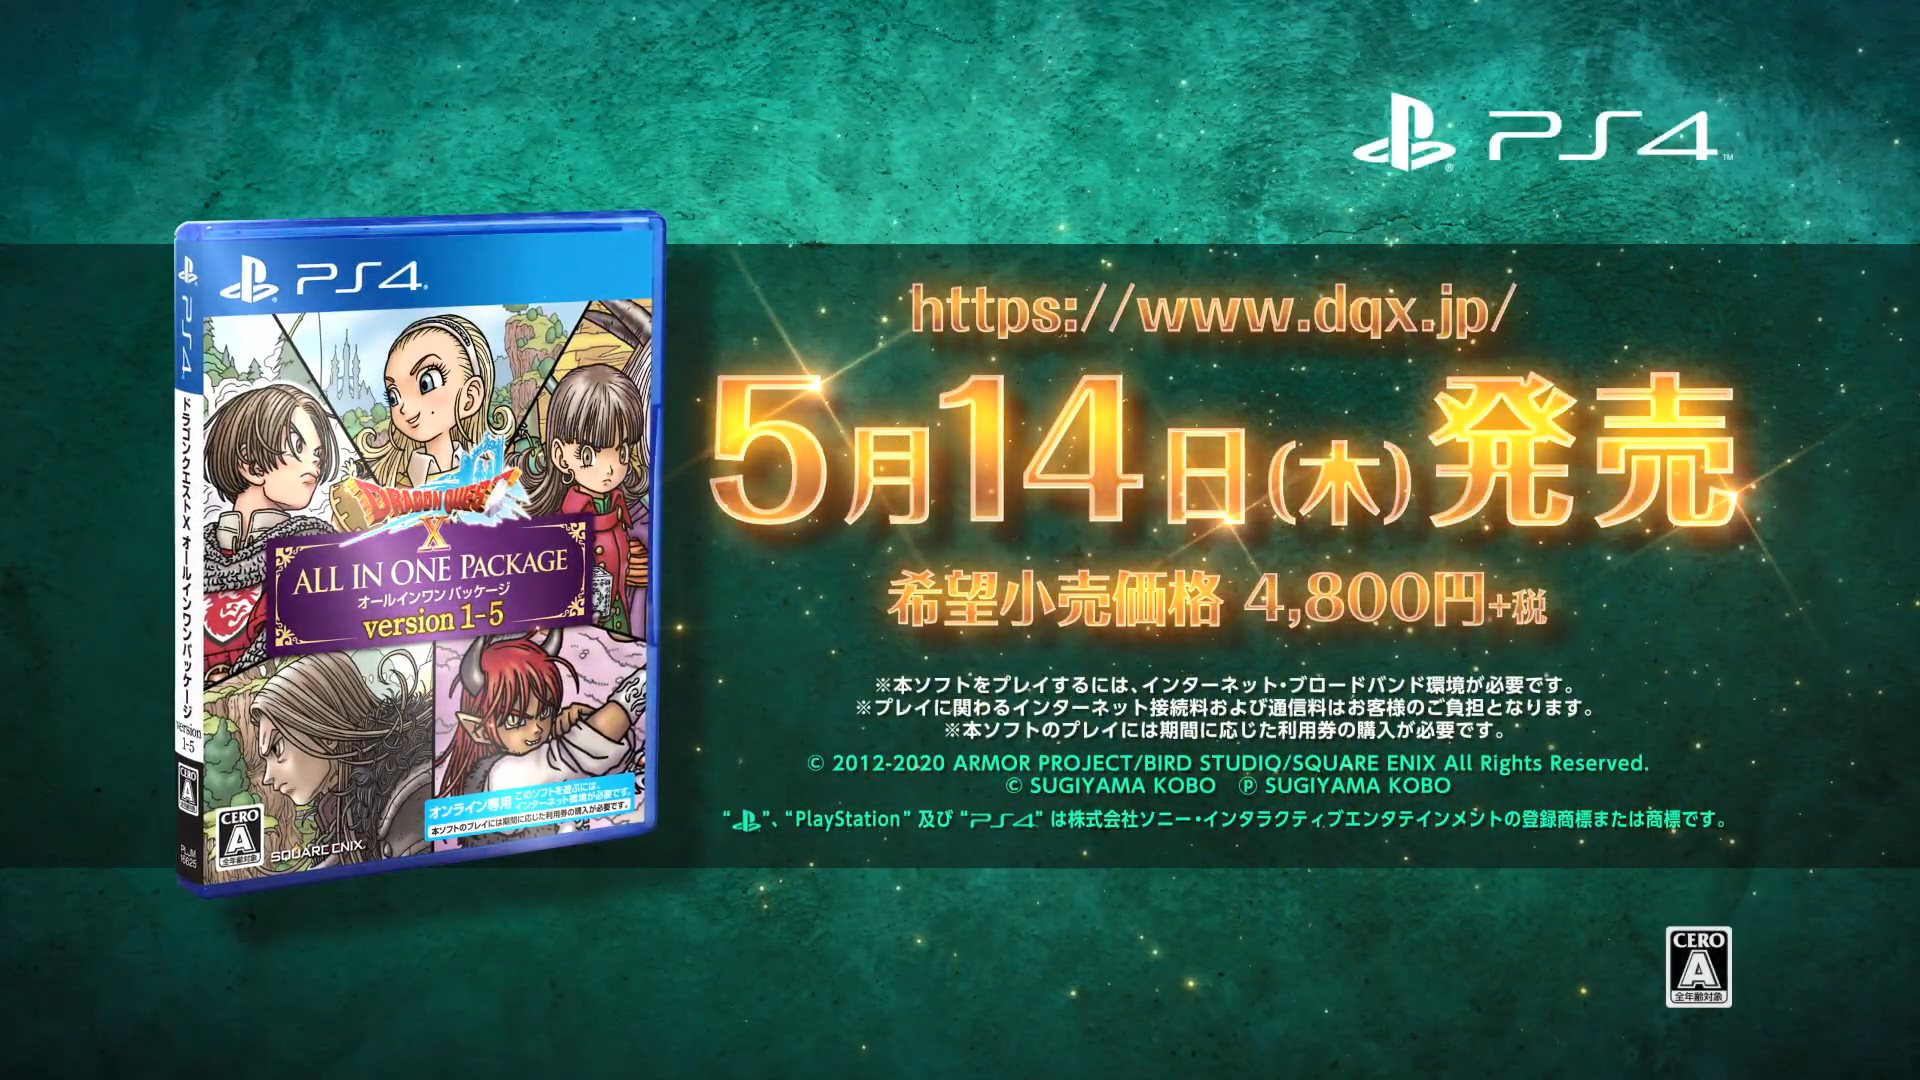 PS4版《勇者斗恶龙X》全版本合集宣传片 5月14日发售